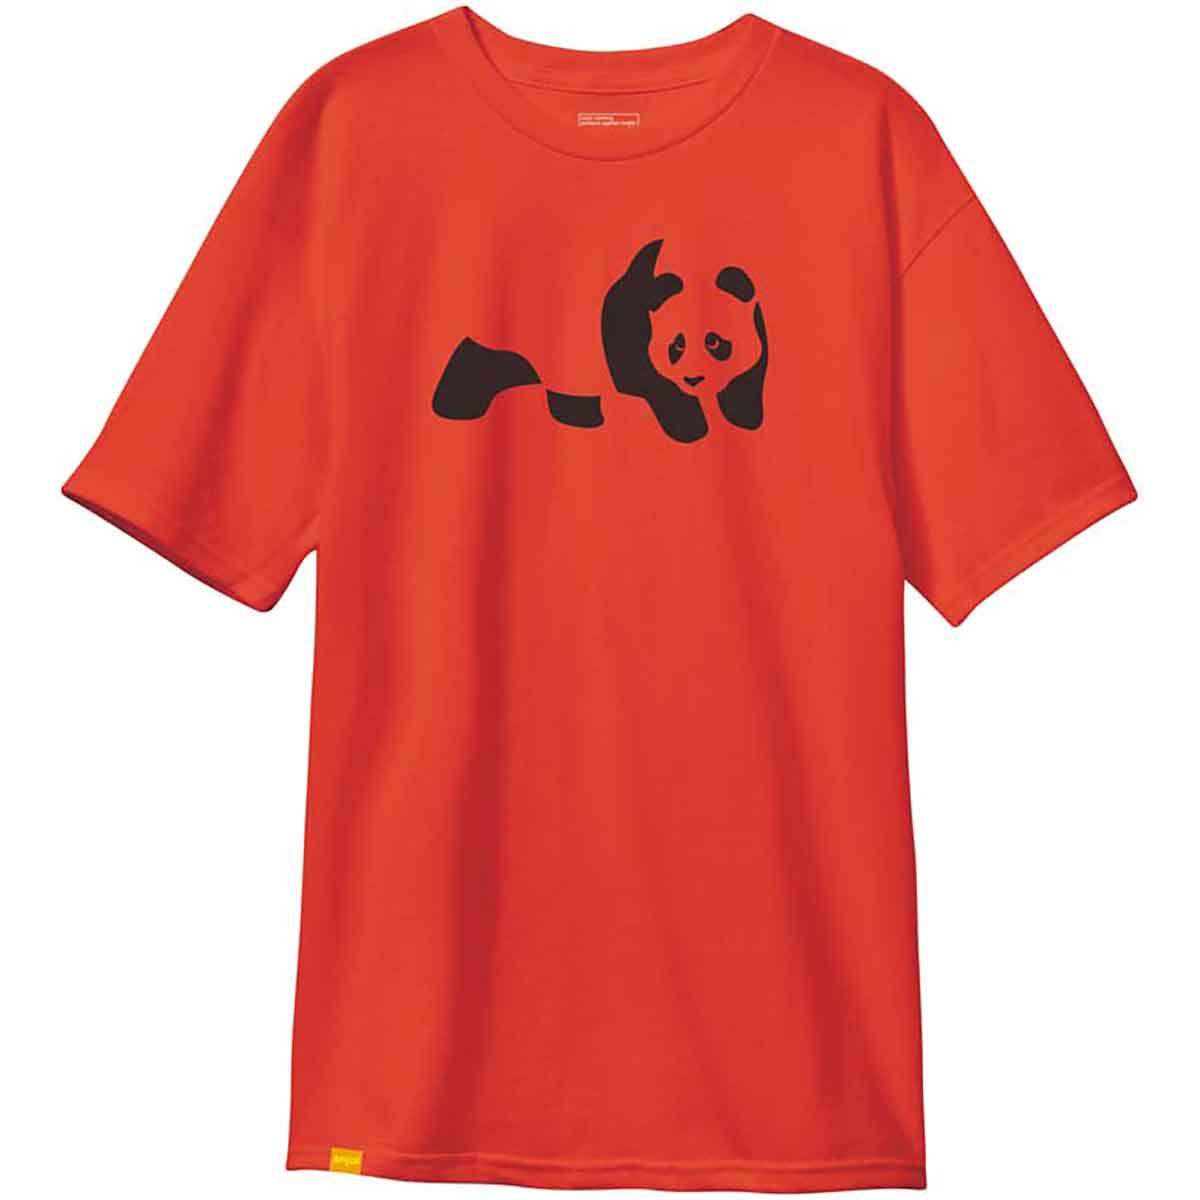 Pandemic T-Shirt - Cherry Tomato |